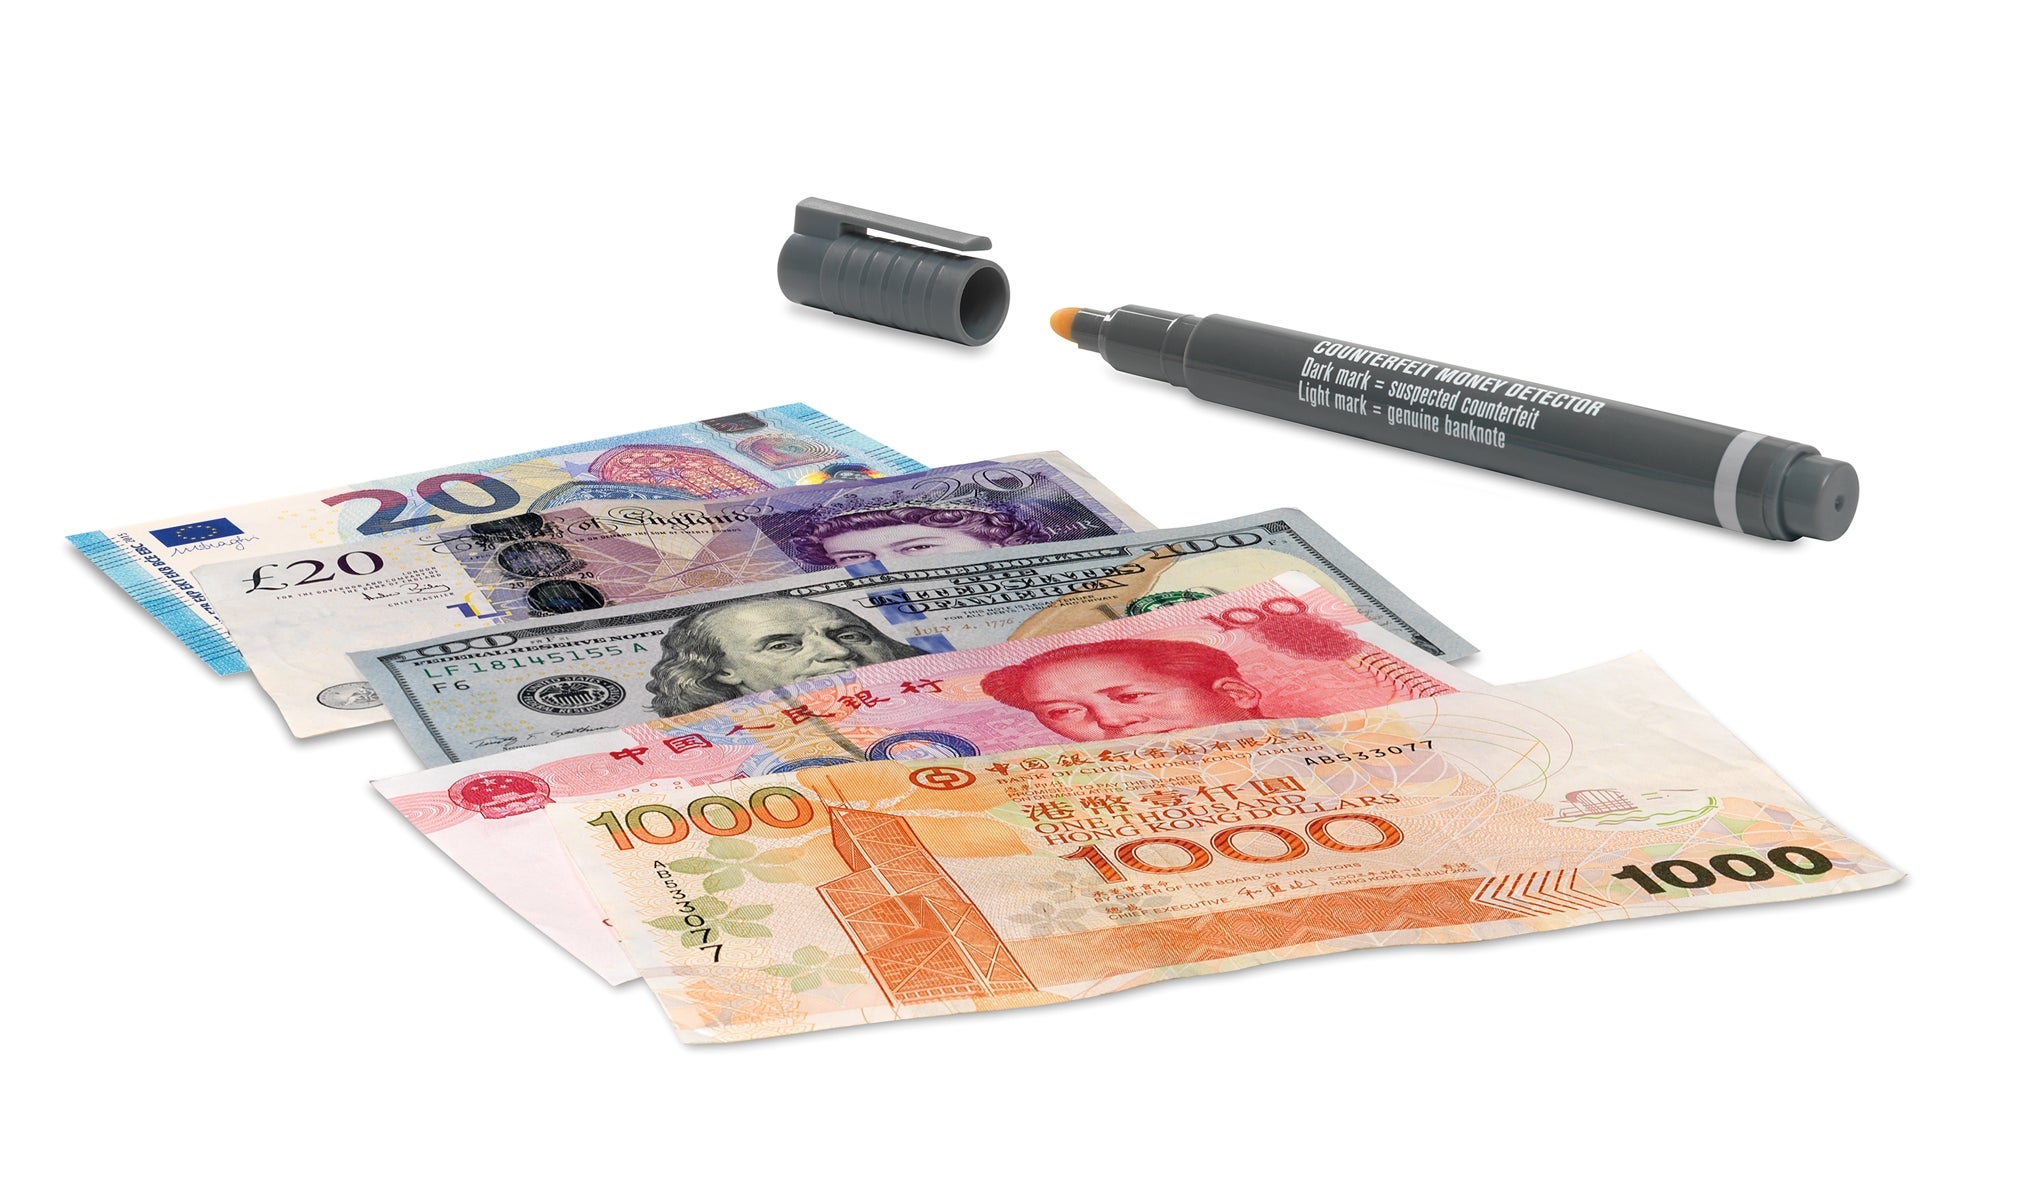 Detector billetes falsos - Safescan 185-S - Pida ya